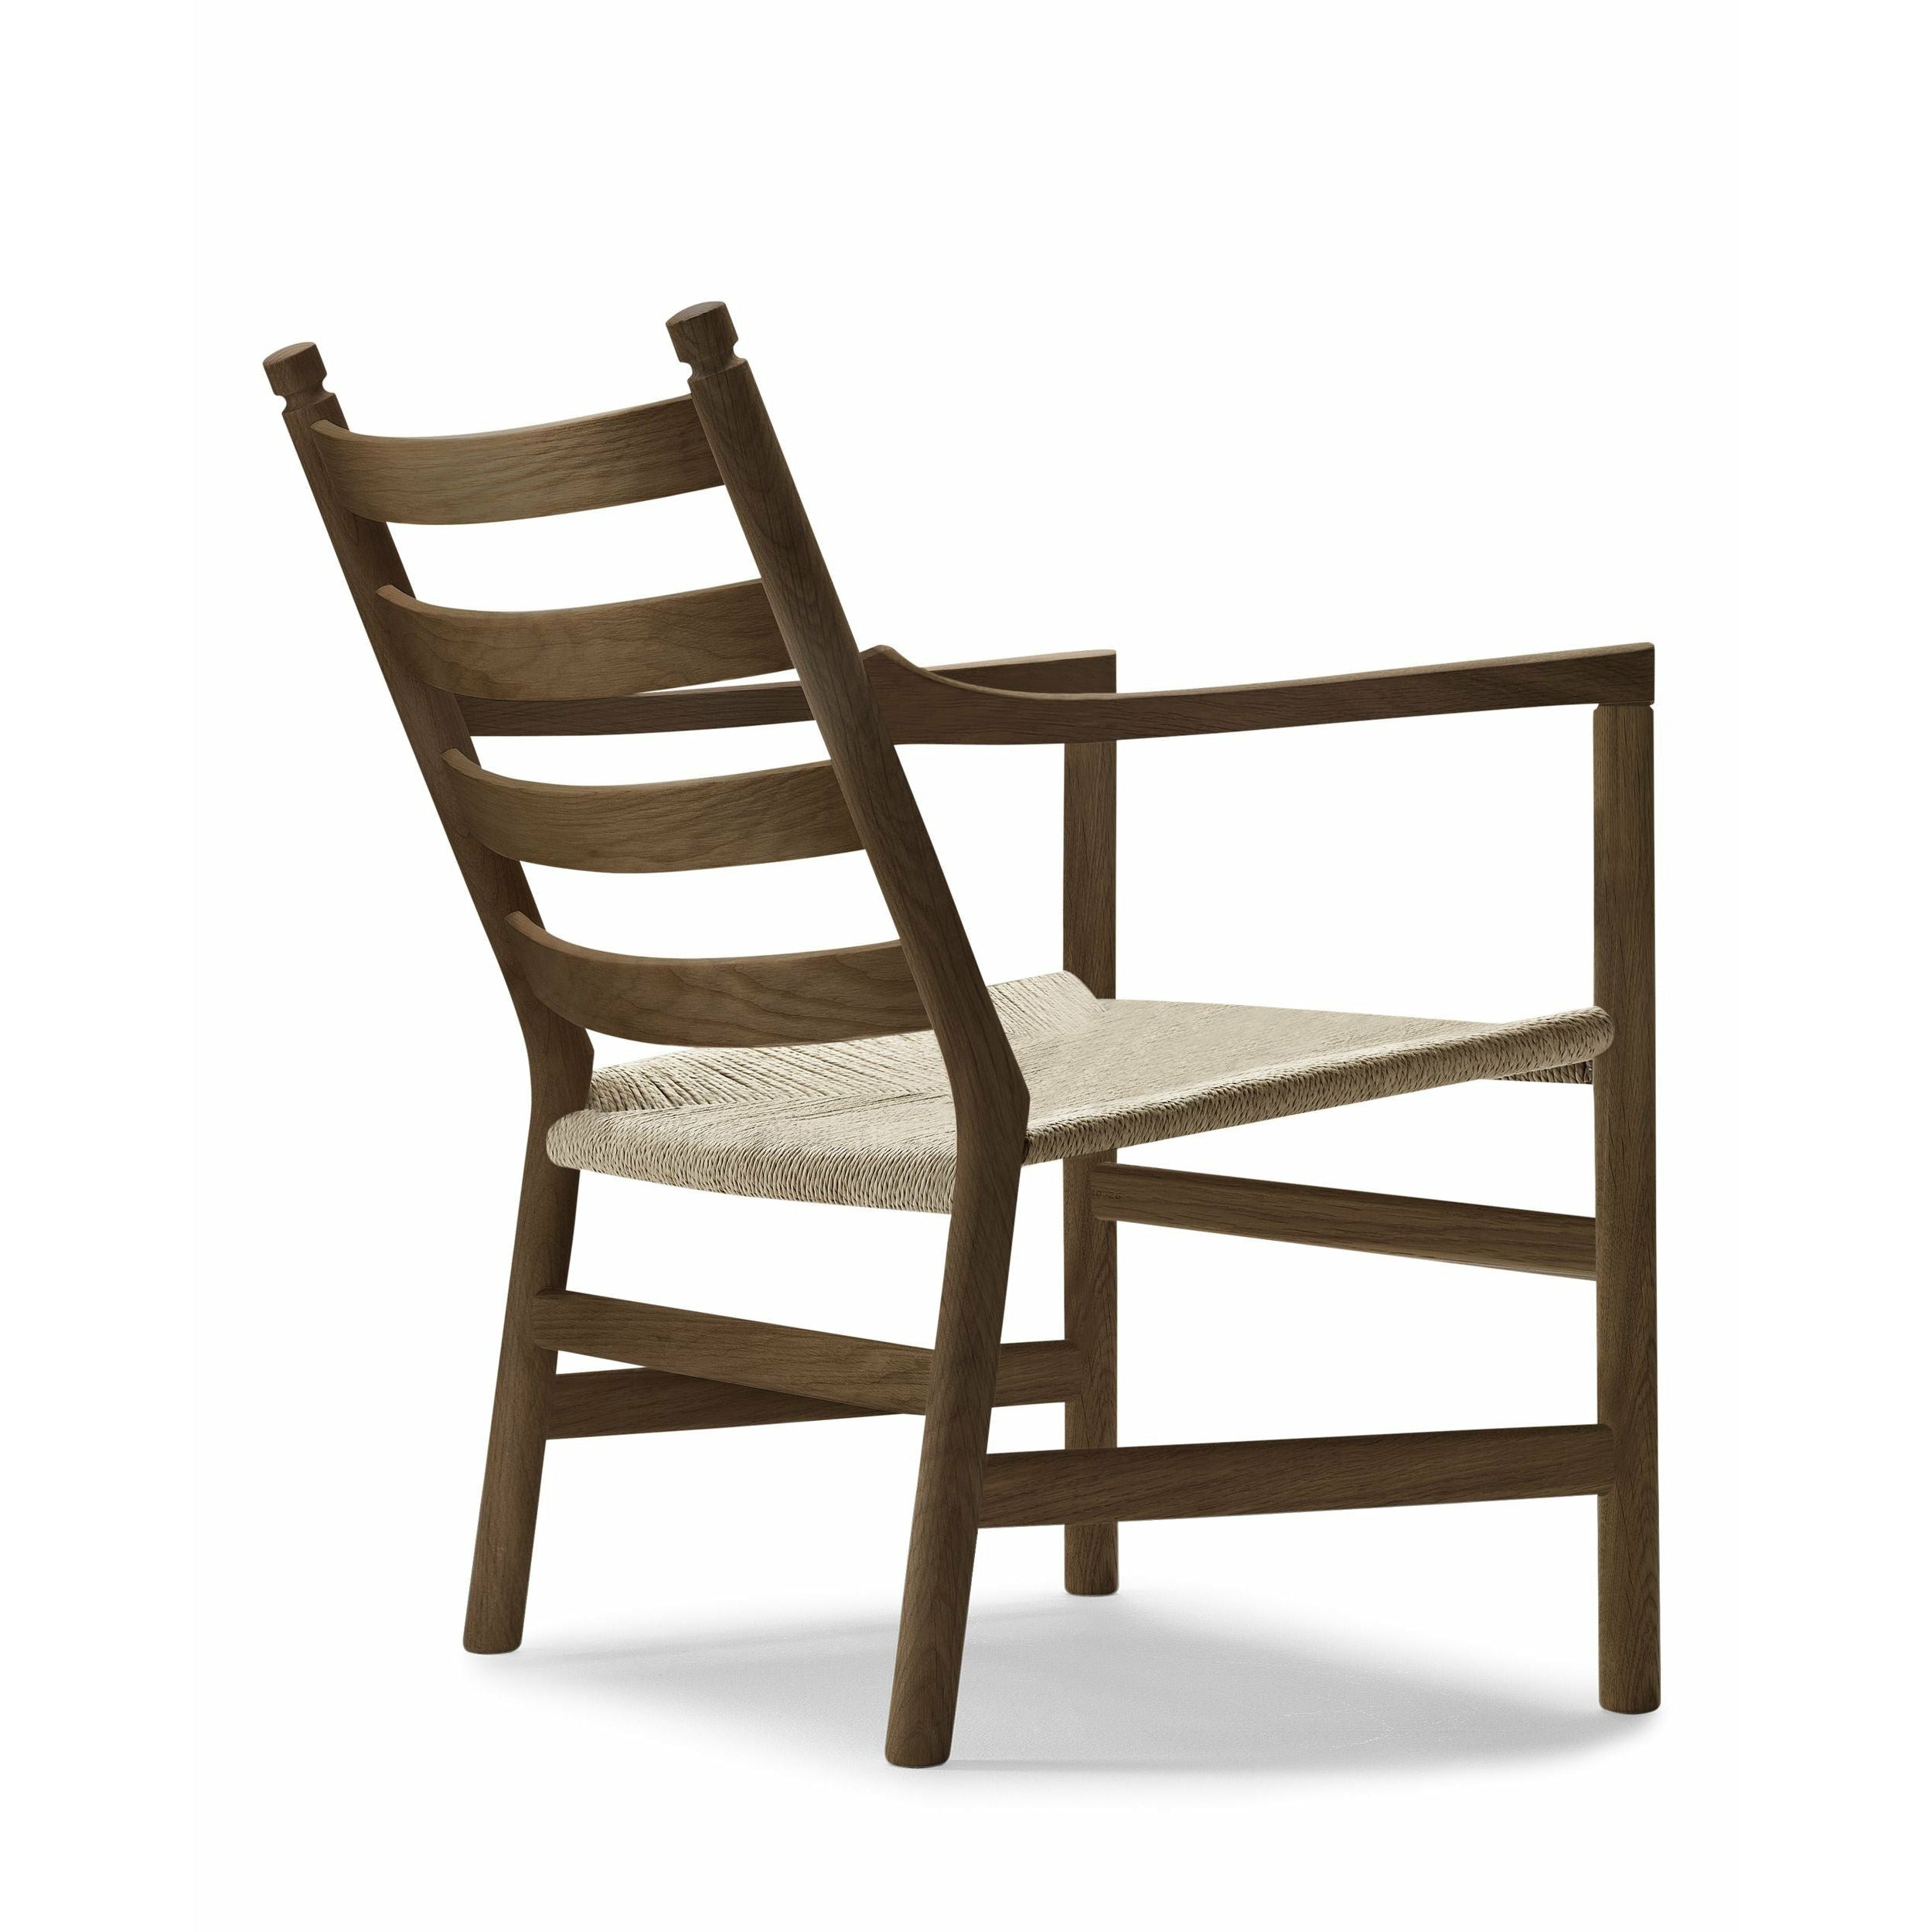 Carl Hansen CH44 Lounge Chair Oak rökt olja, naturlig flätning